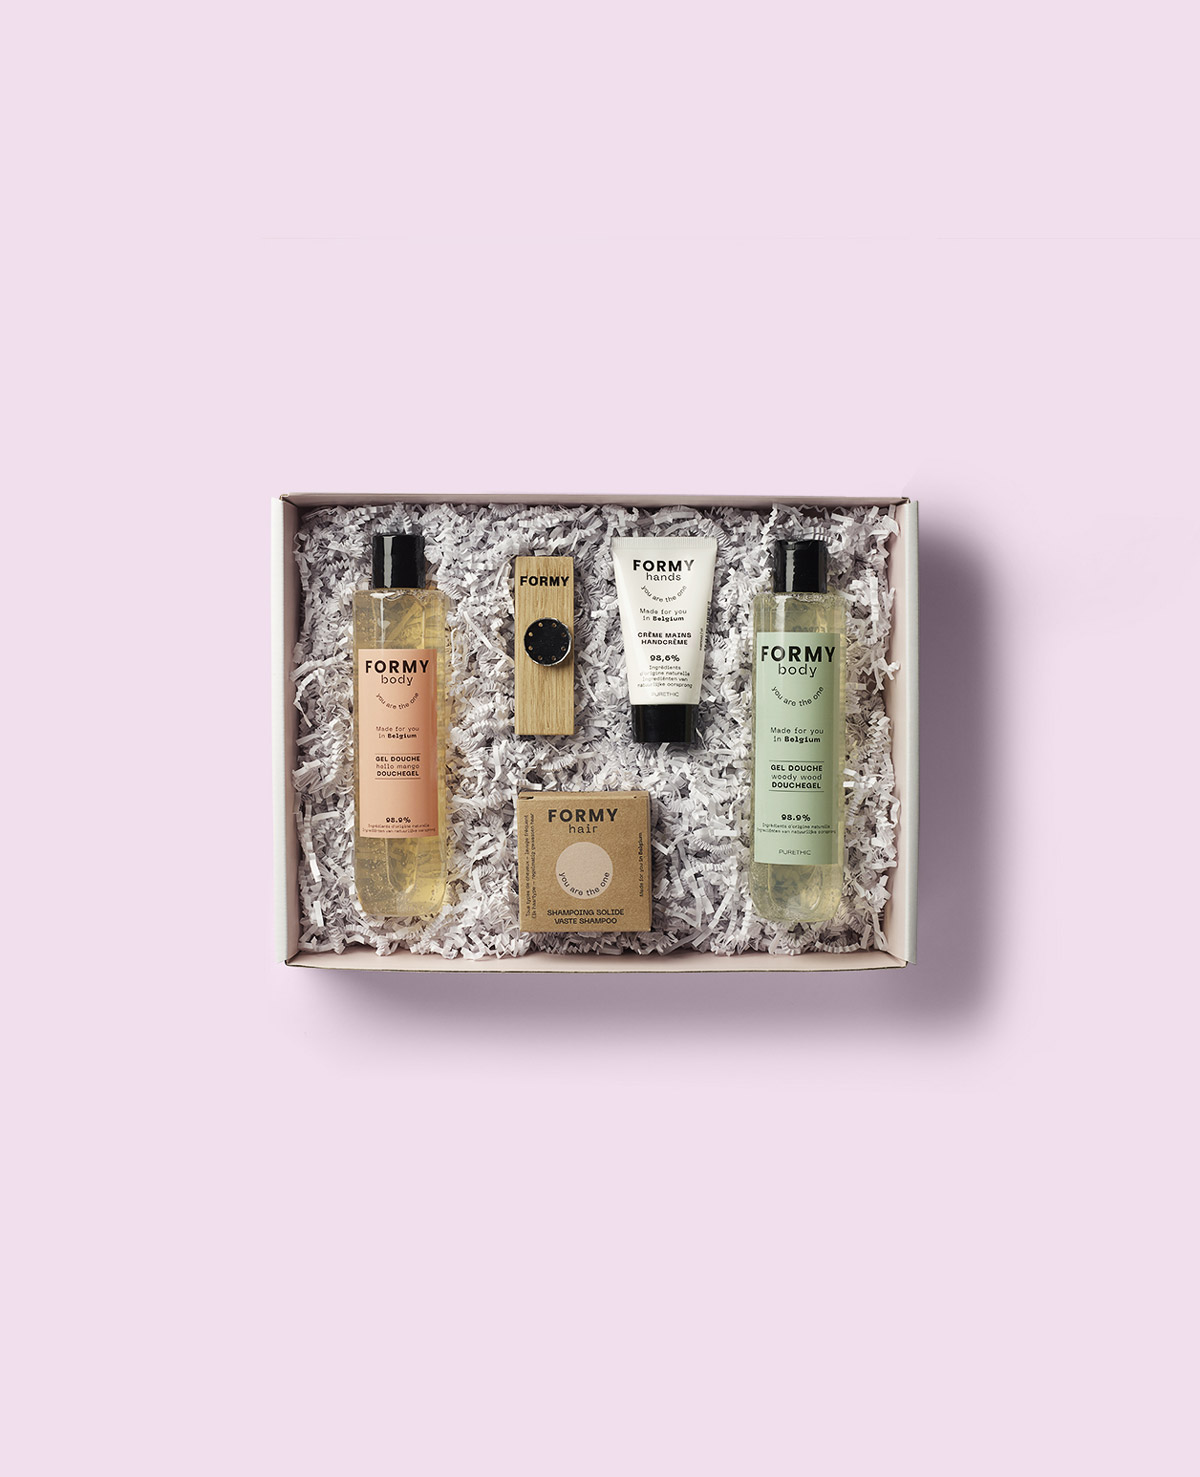 Photo du coffret Natur'Elle FORMY contenant 5 produits de cosmétique naturels. Deux gel douche, une crème main, un porte savon et un shampoing solide.